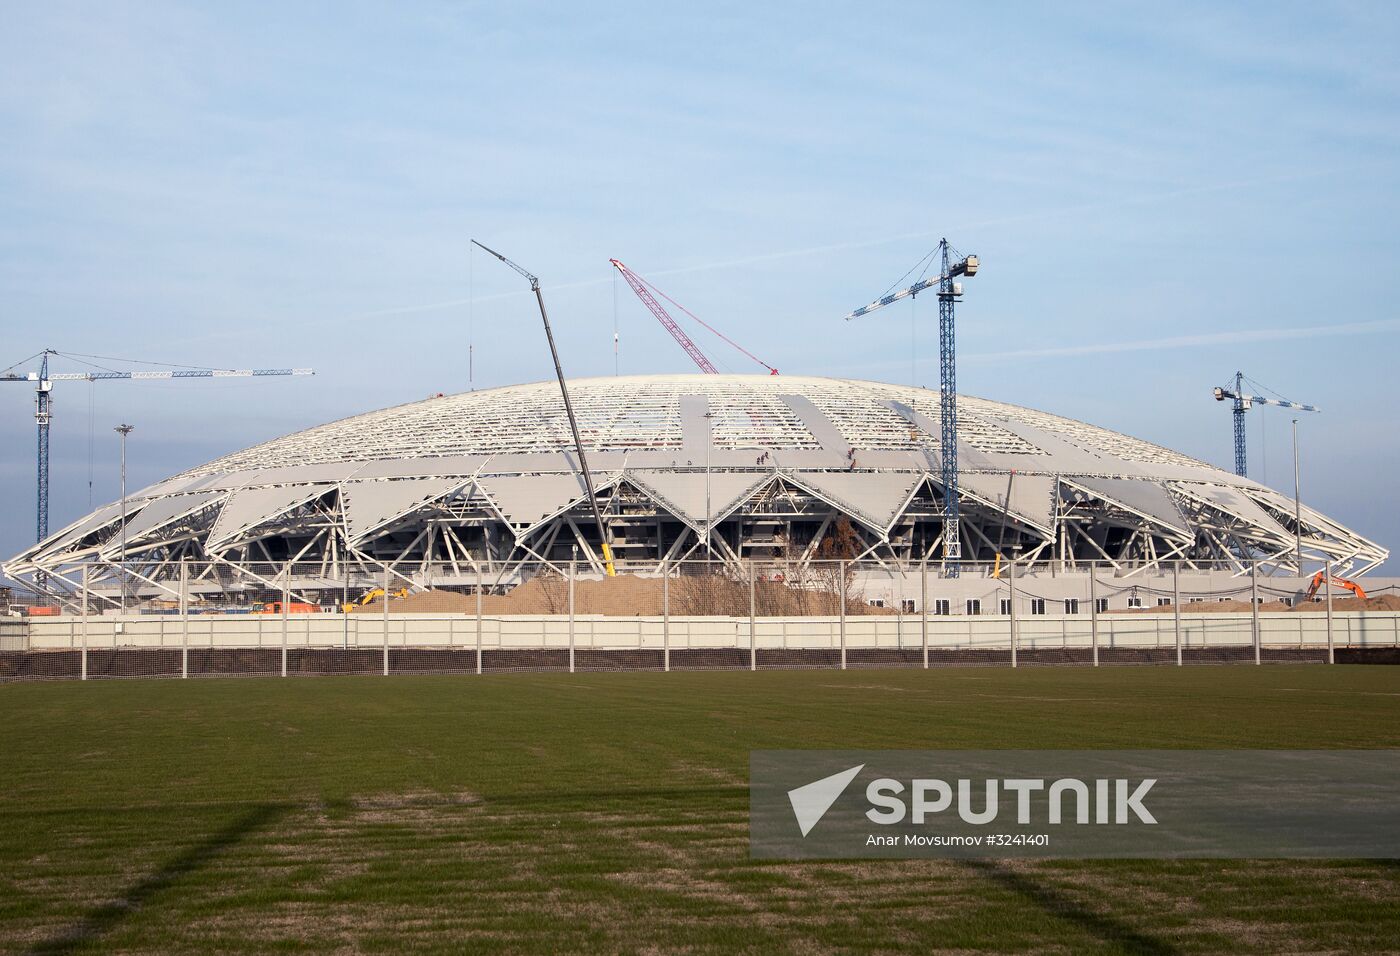 Samara Arena stadium construction site